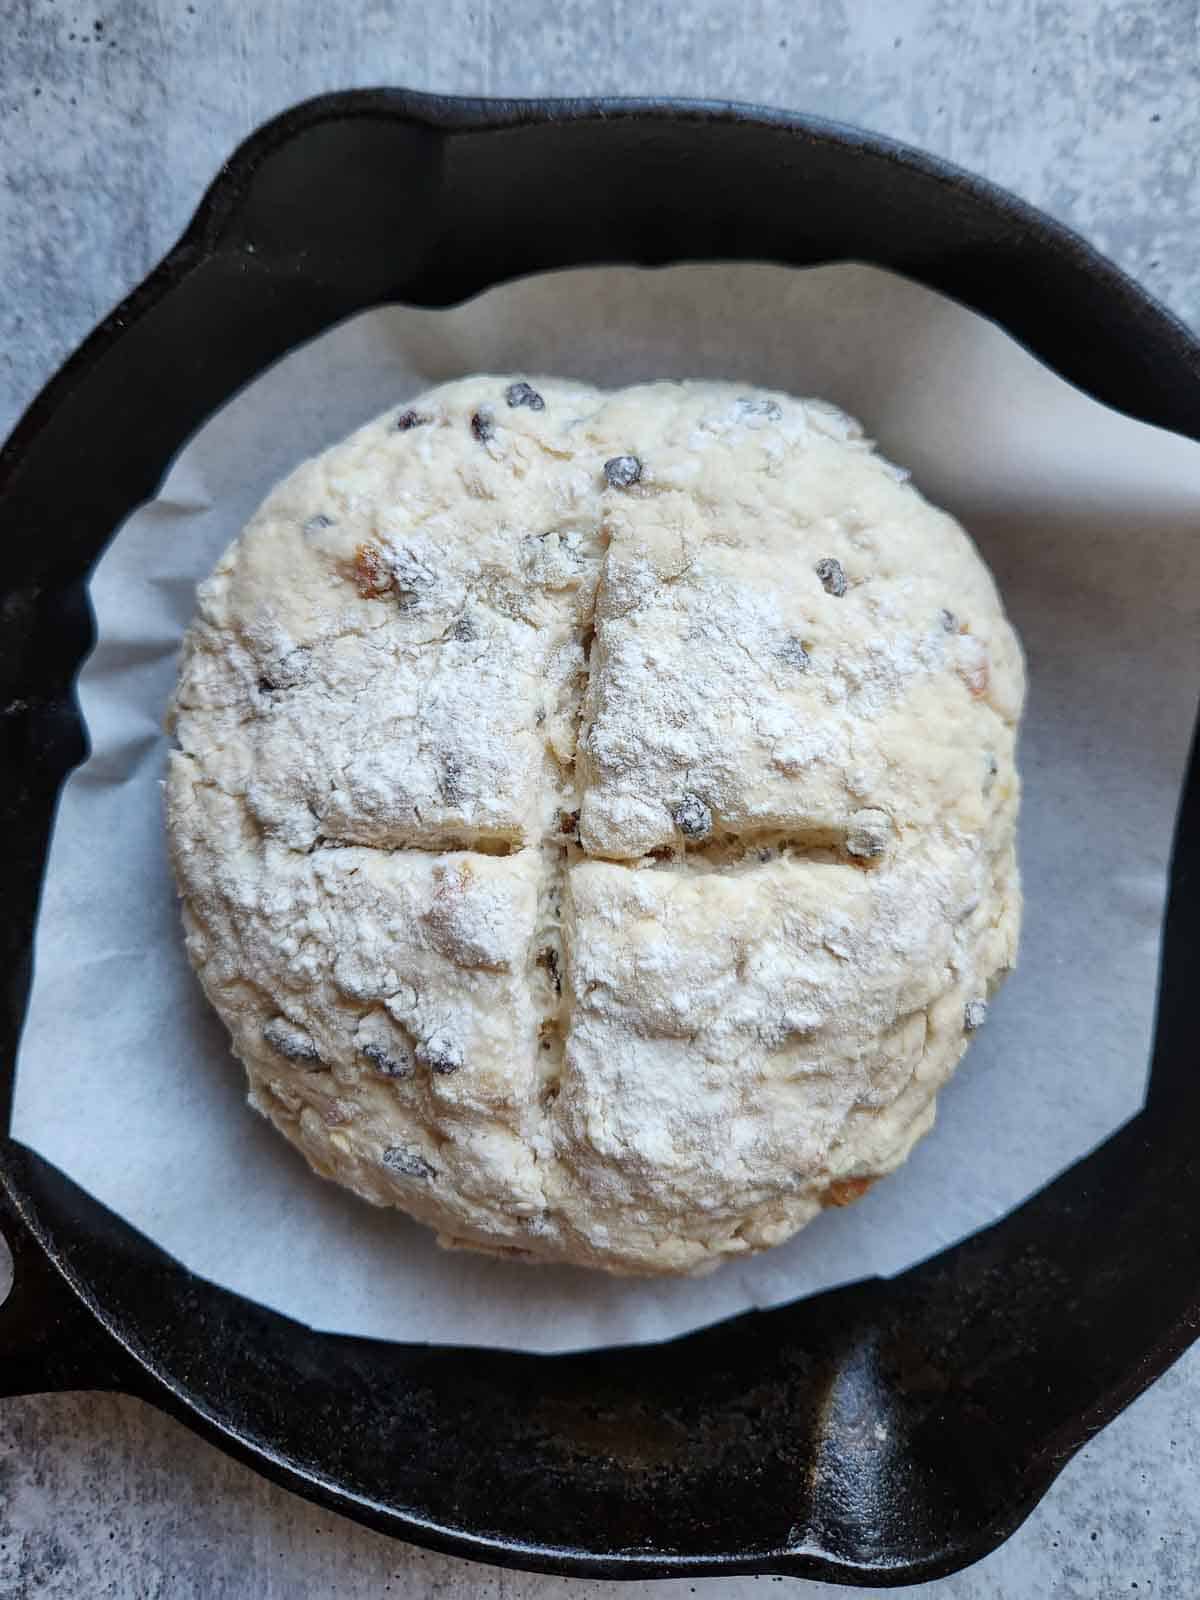 Irish soda bread dough in a cast iron skillet.